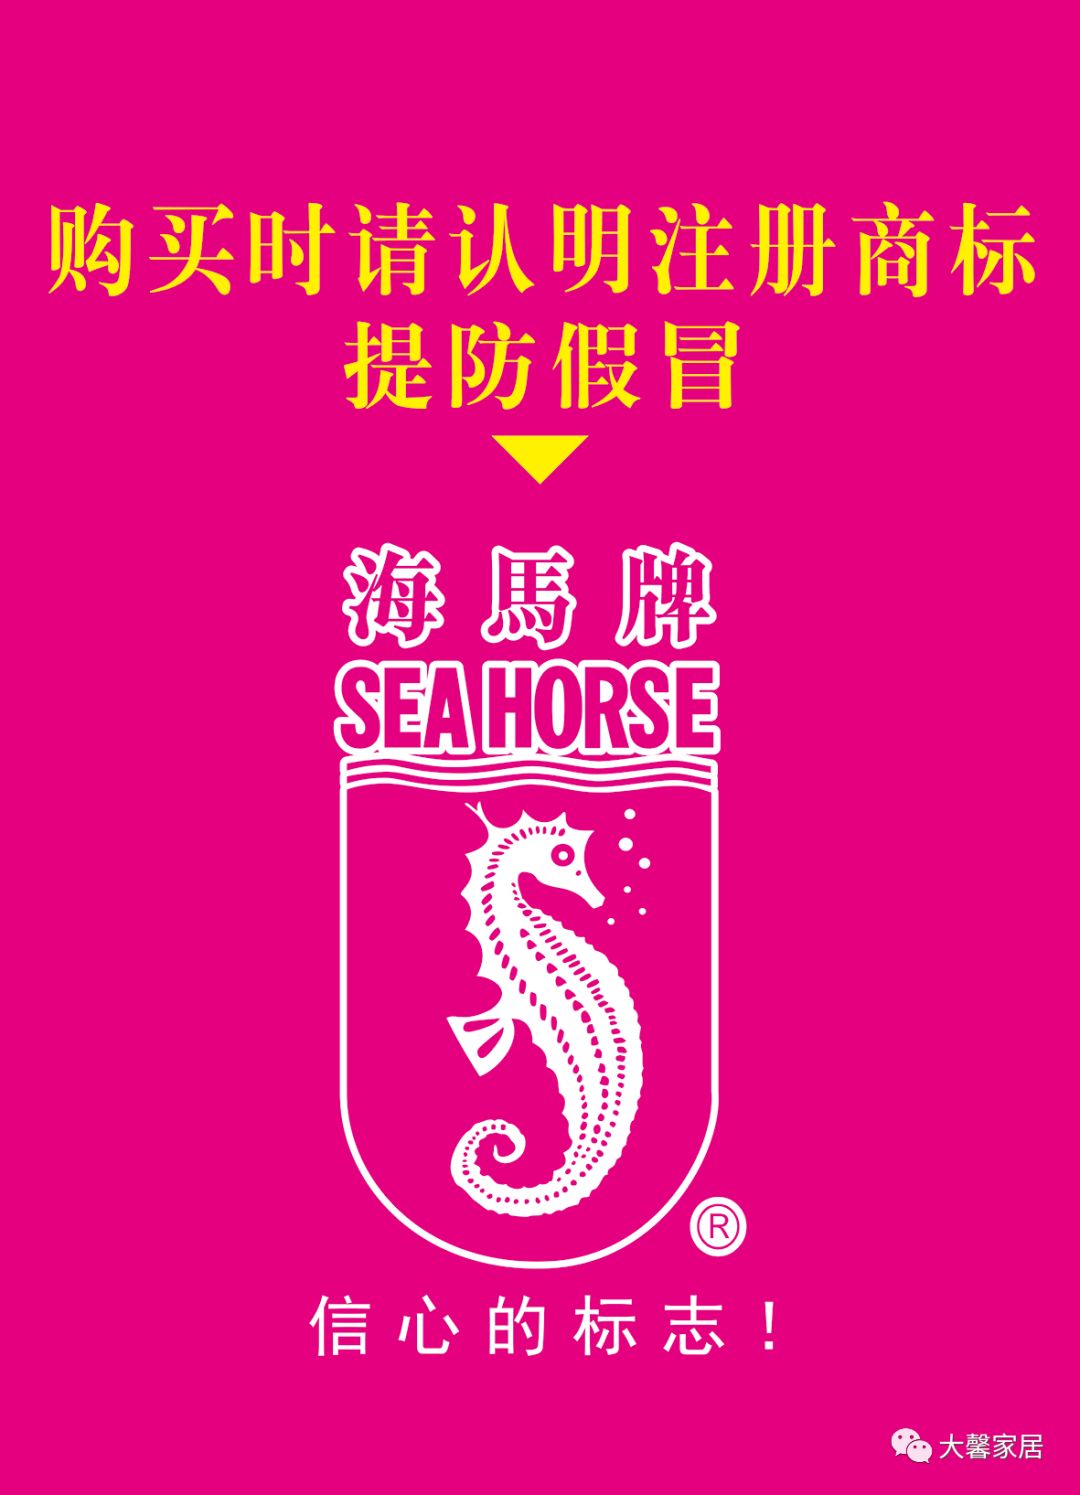 海马床垫logo图片